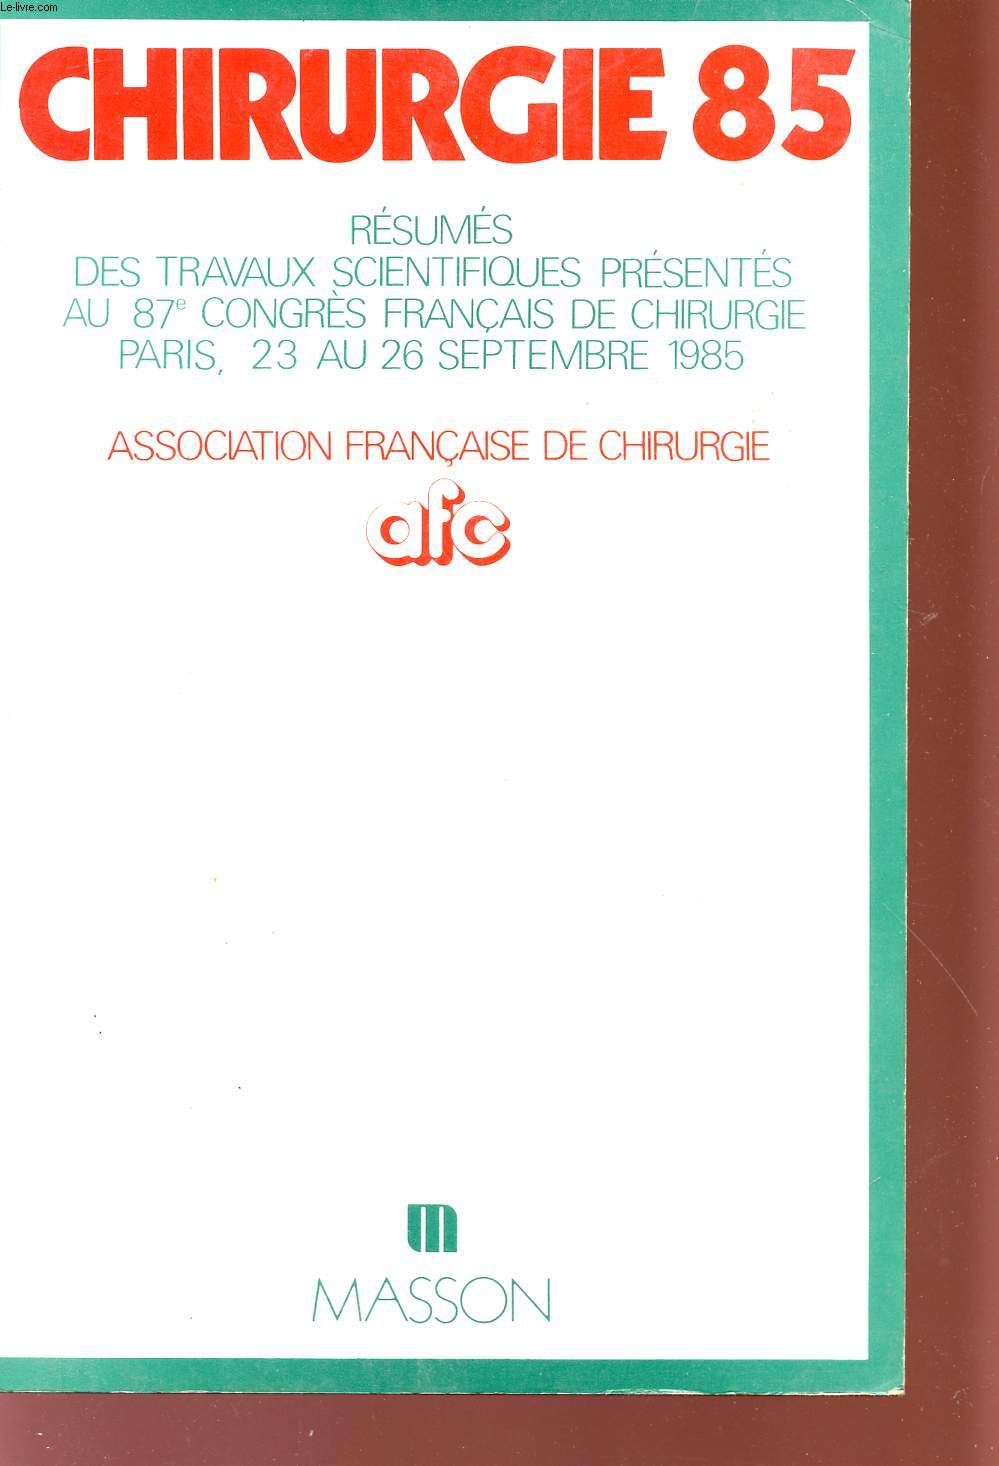 CHIRURGIE 85 - RESUMES SCIENTIFIQUES PRESENTES AU 87 CONGRE FRANCAIS DE CHIRURGIE - PARIS - 23 AU 26 SEPTEMBRE 1985